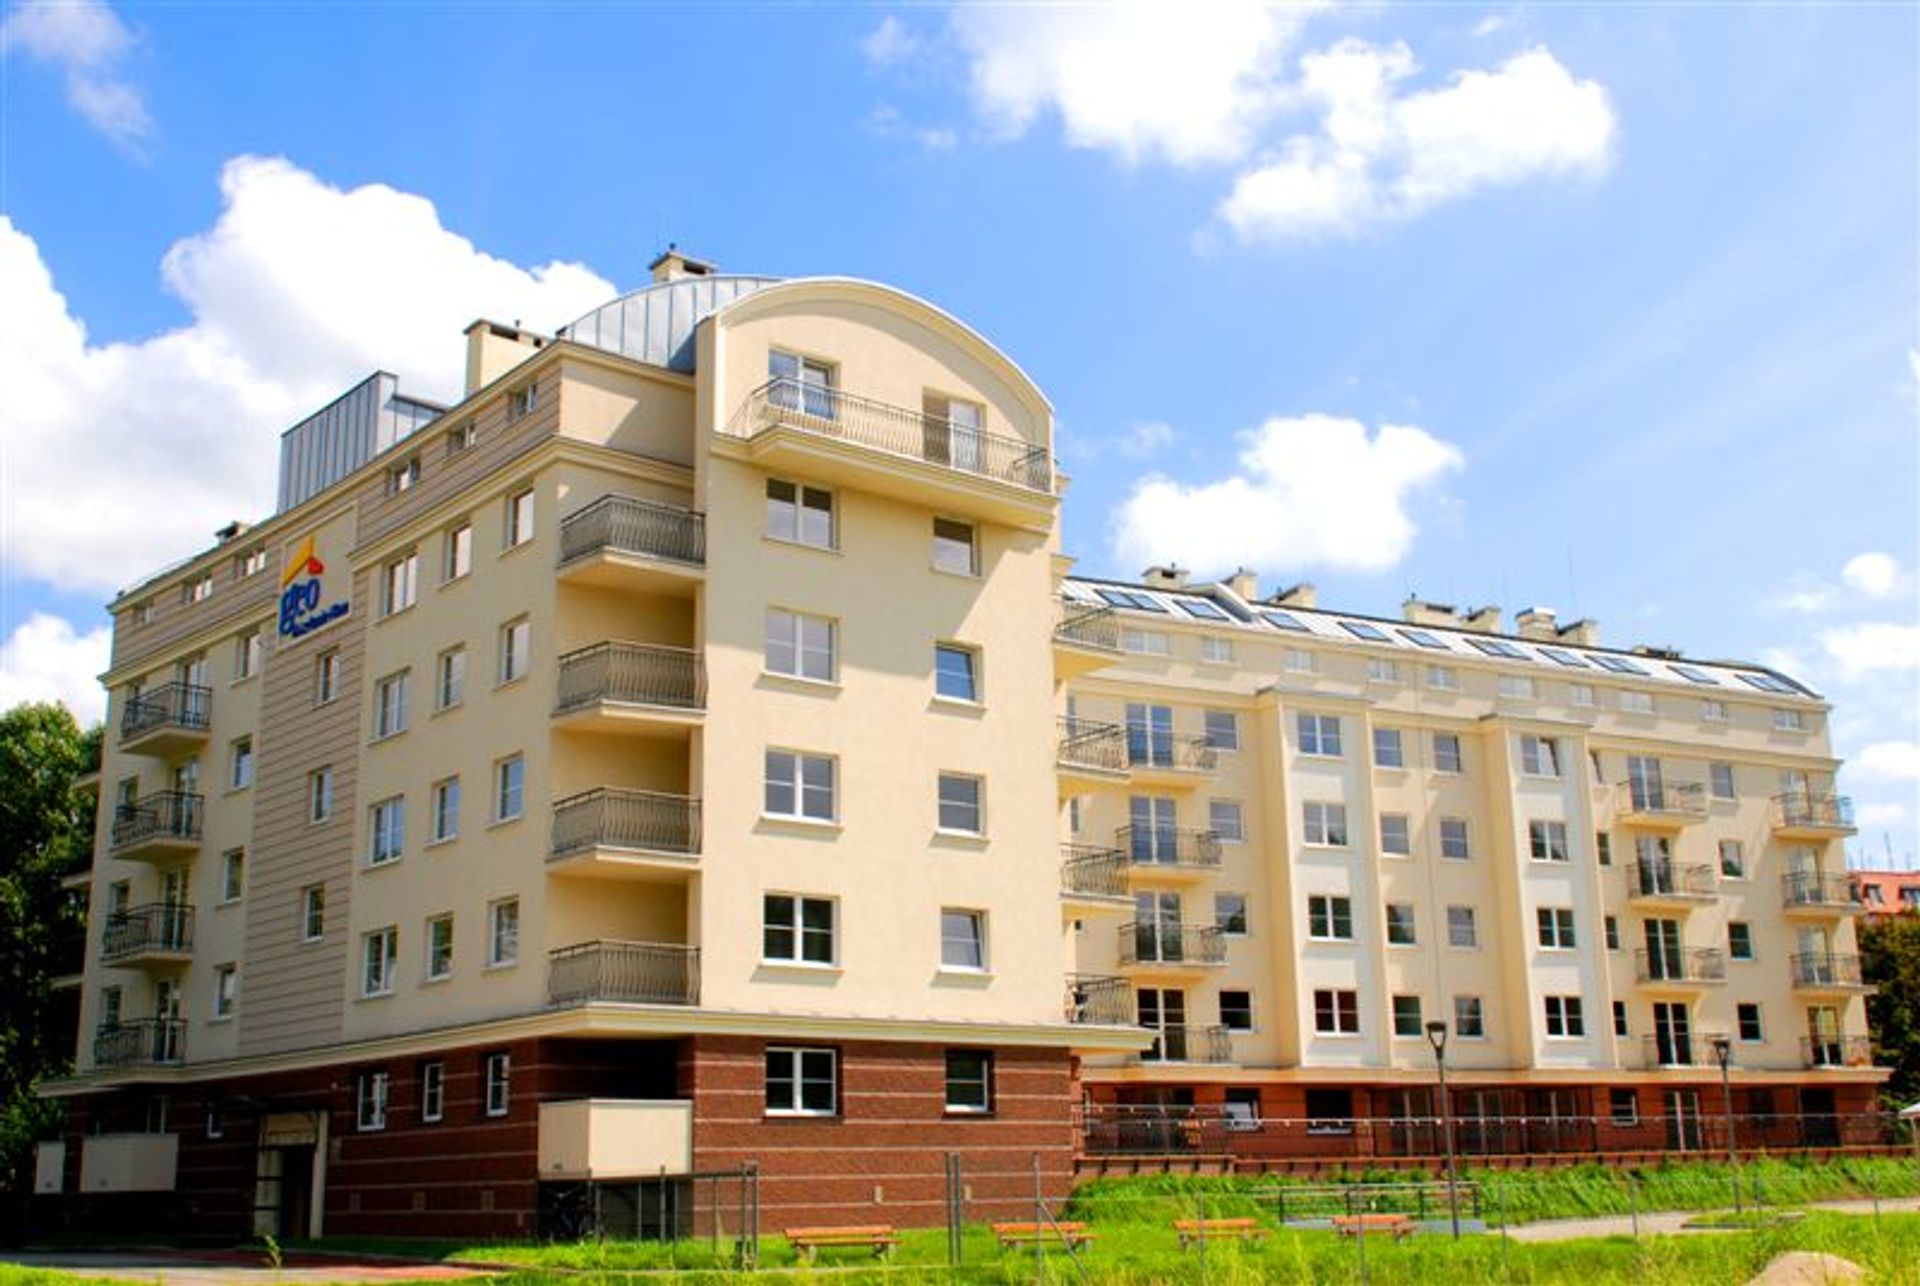  Dzień otwarty w trzech wrocławskich inwestycjach mieszkaniowych